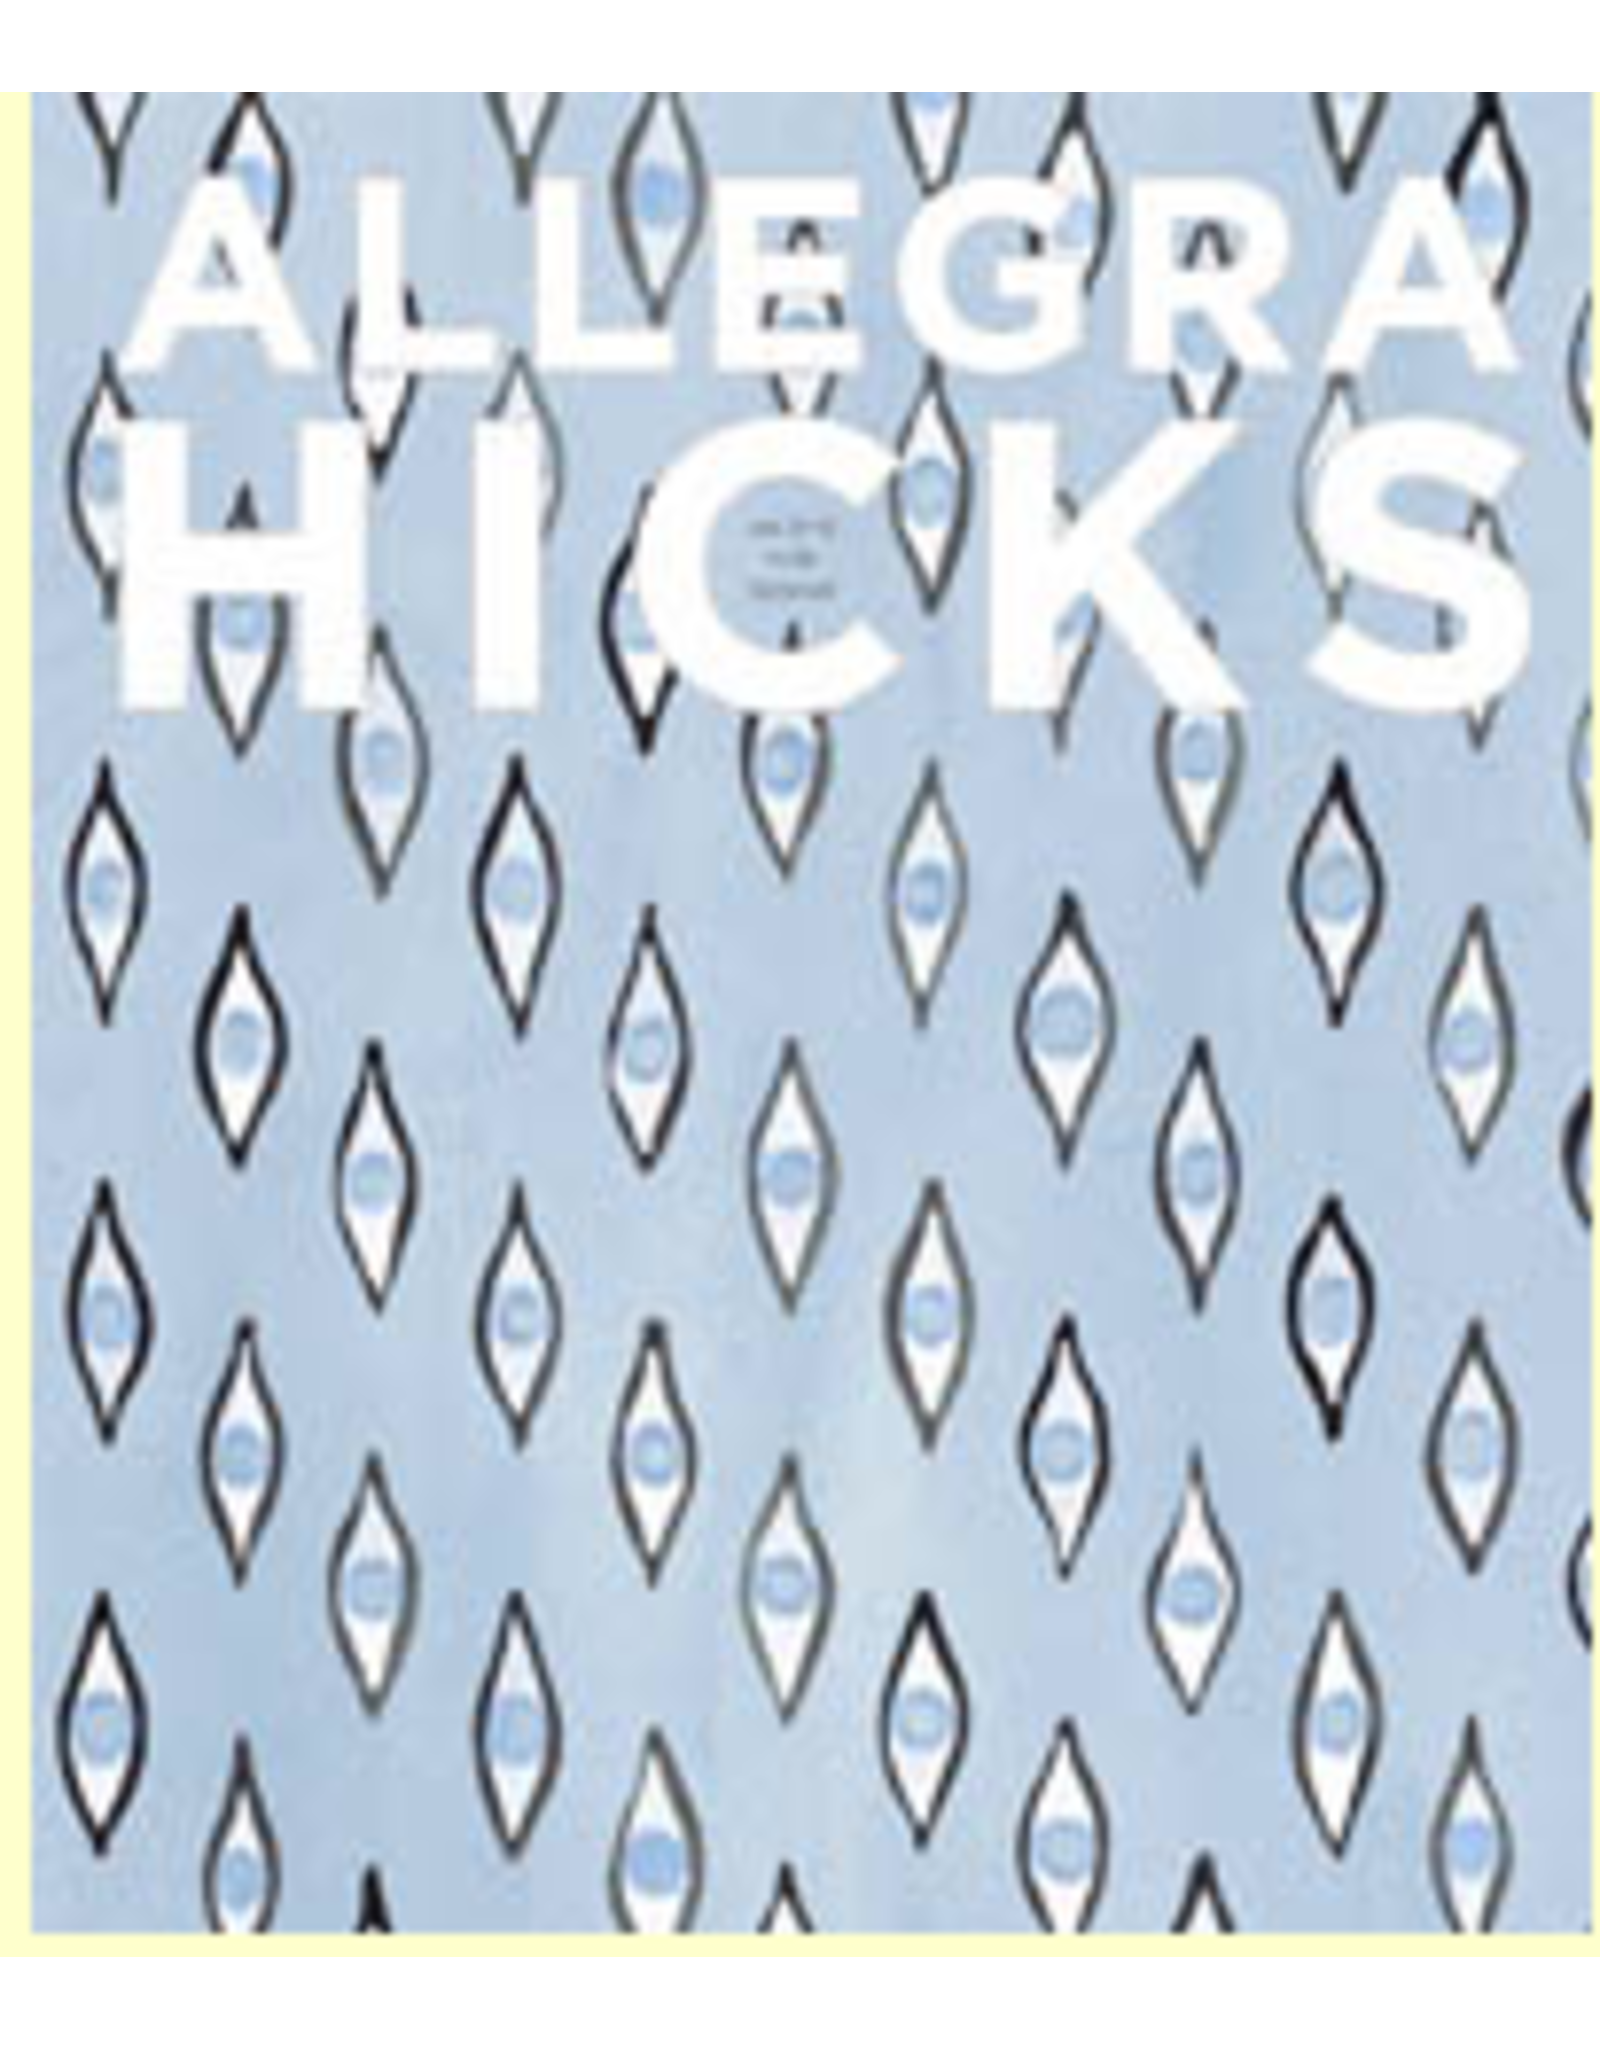 Website Allegra Hicks:  Eye for Design